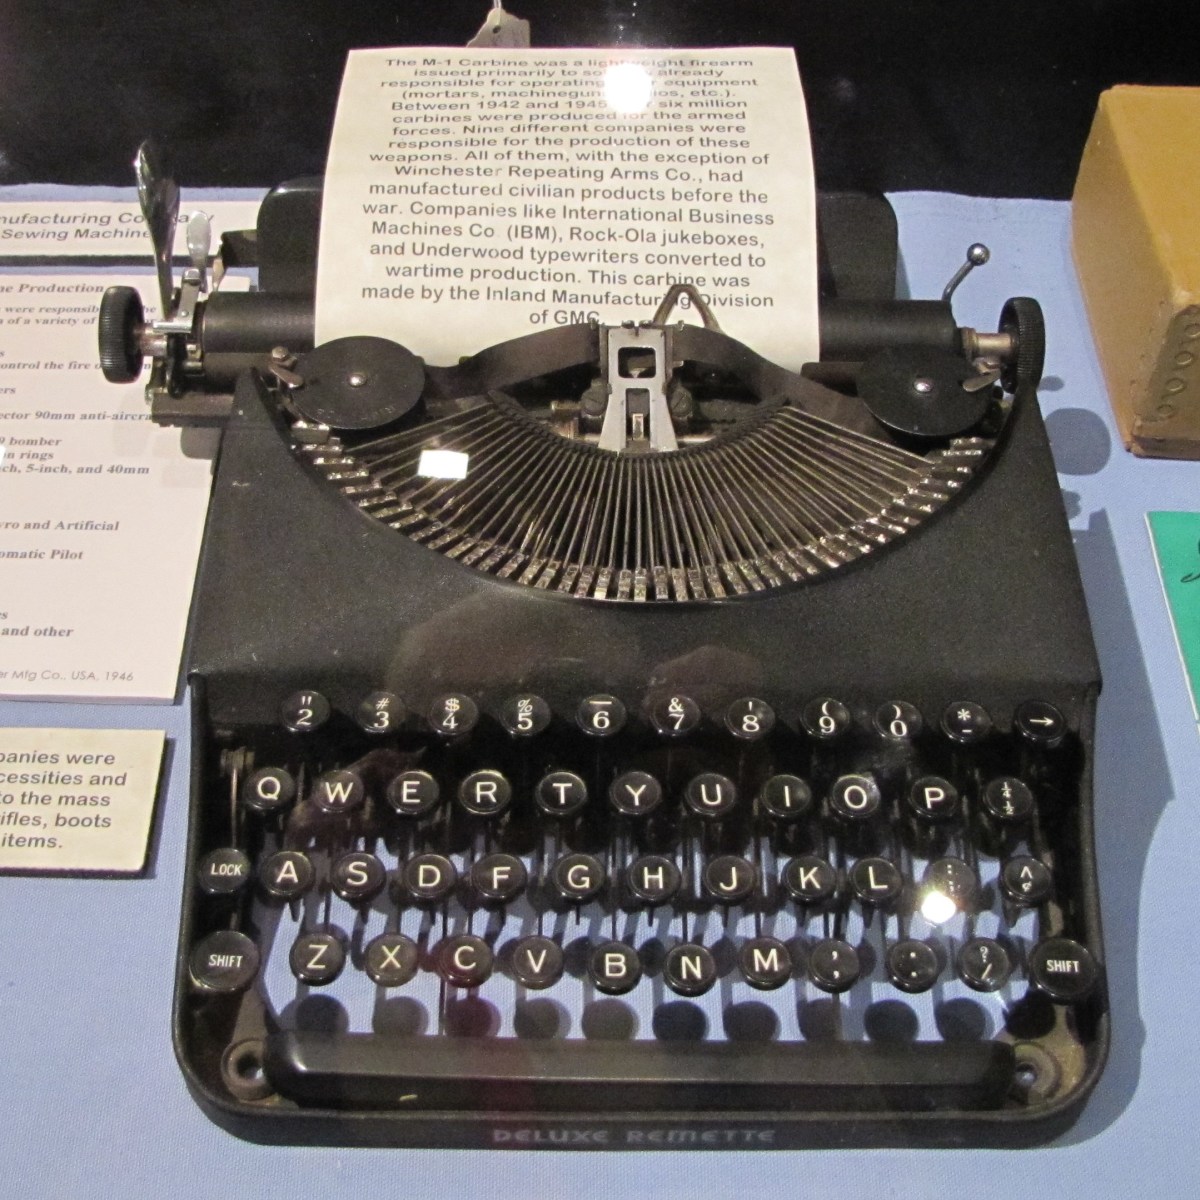 Typewriter from WWII era.